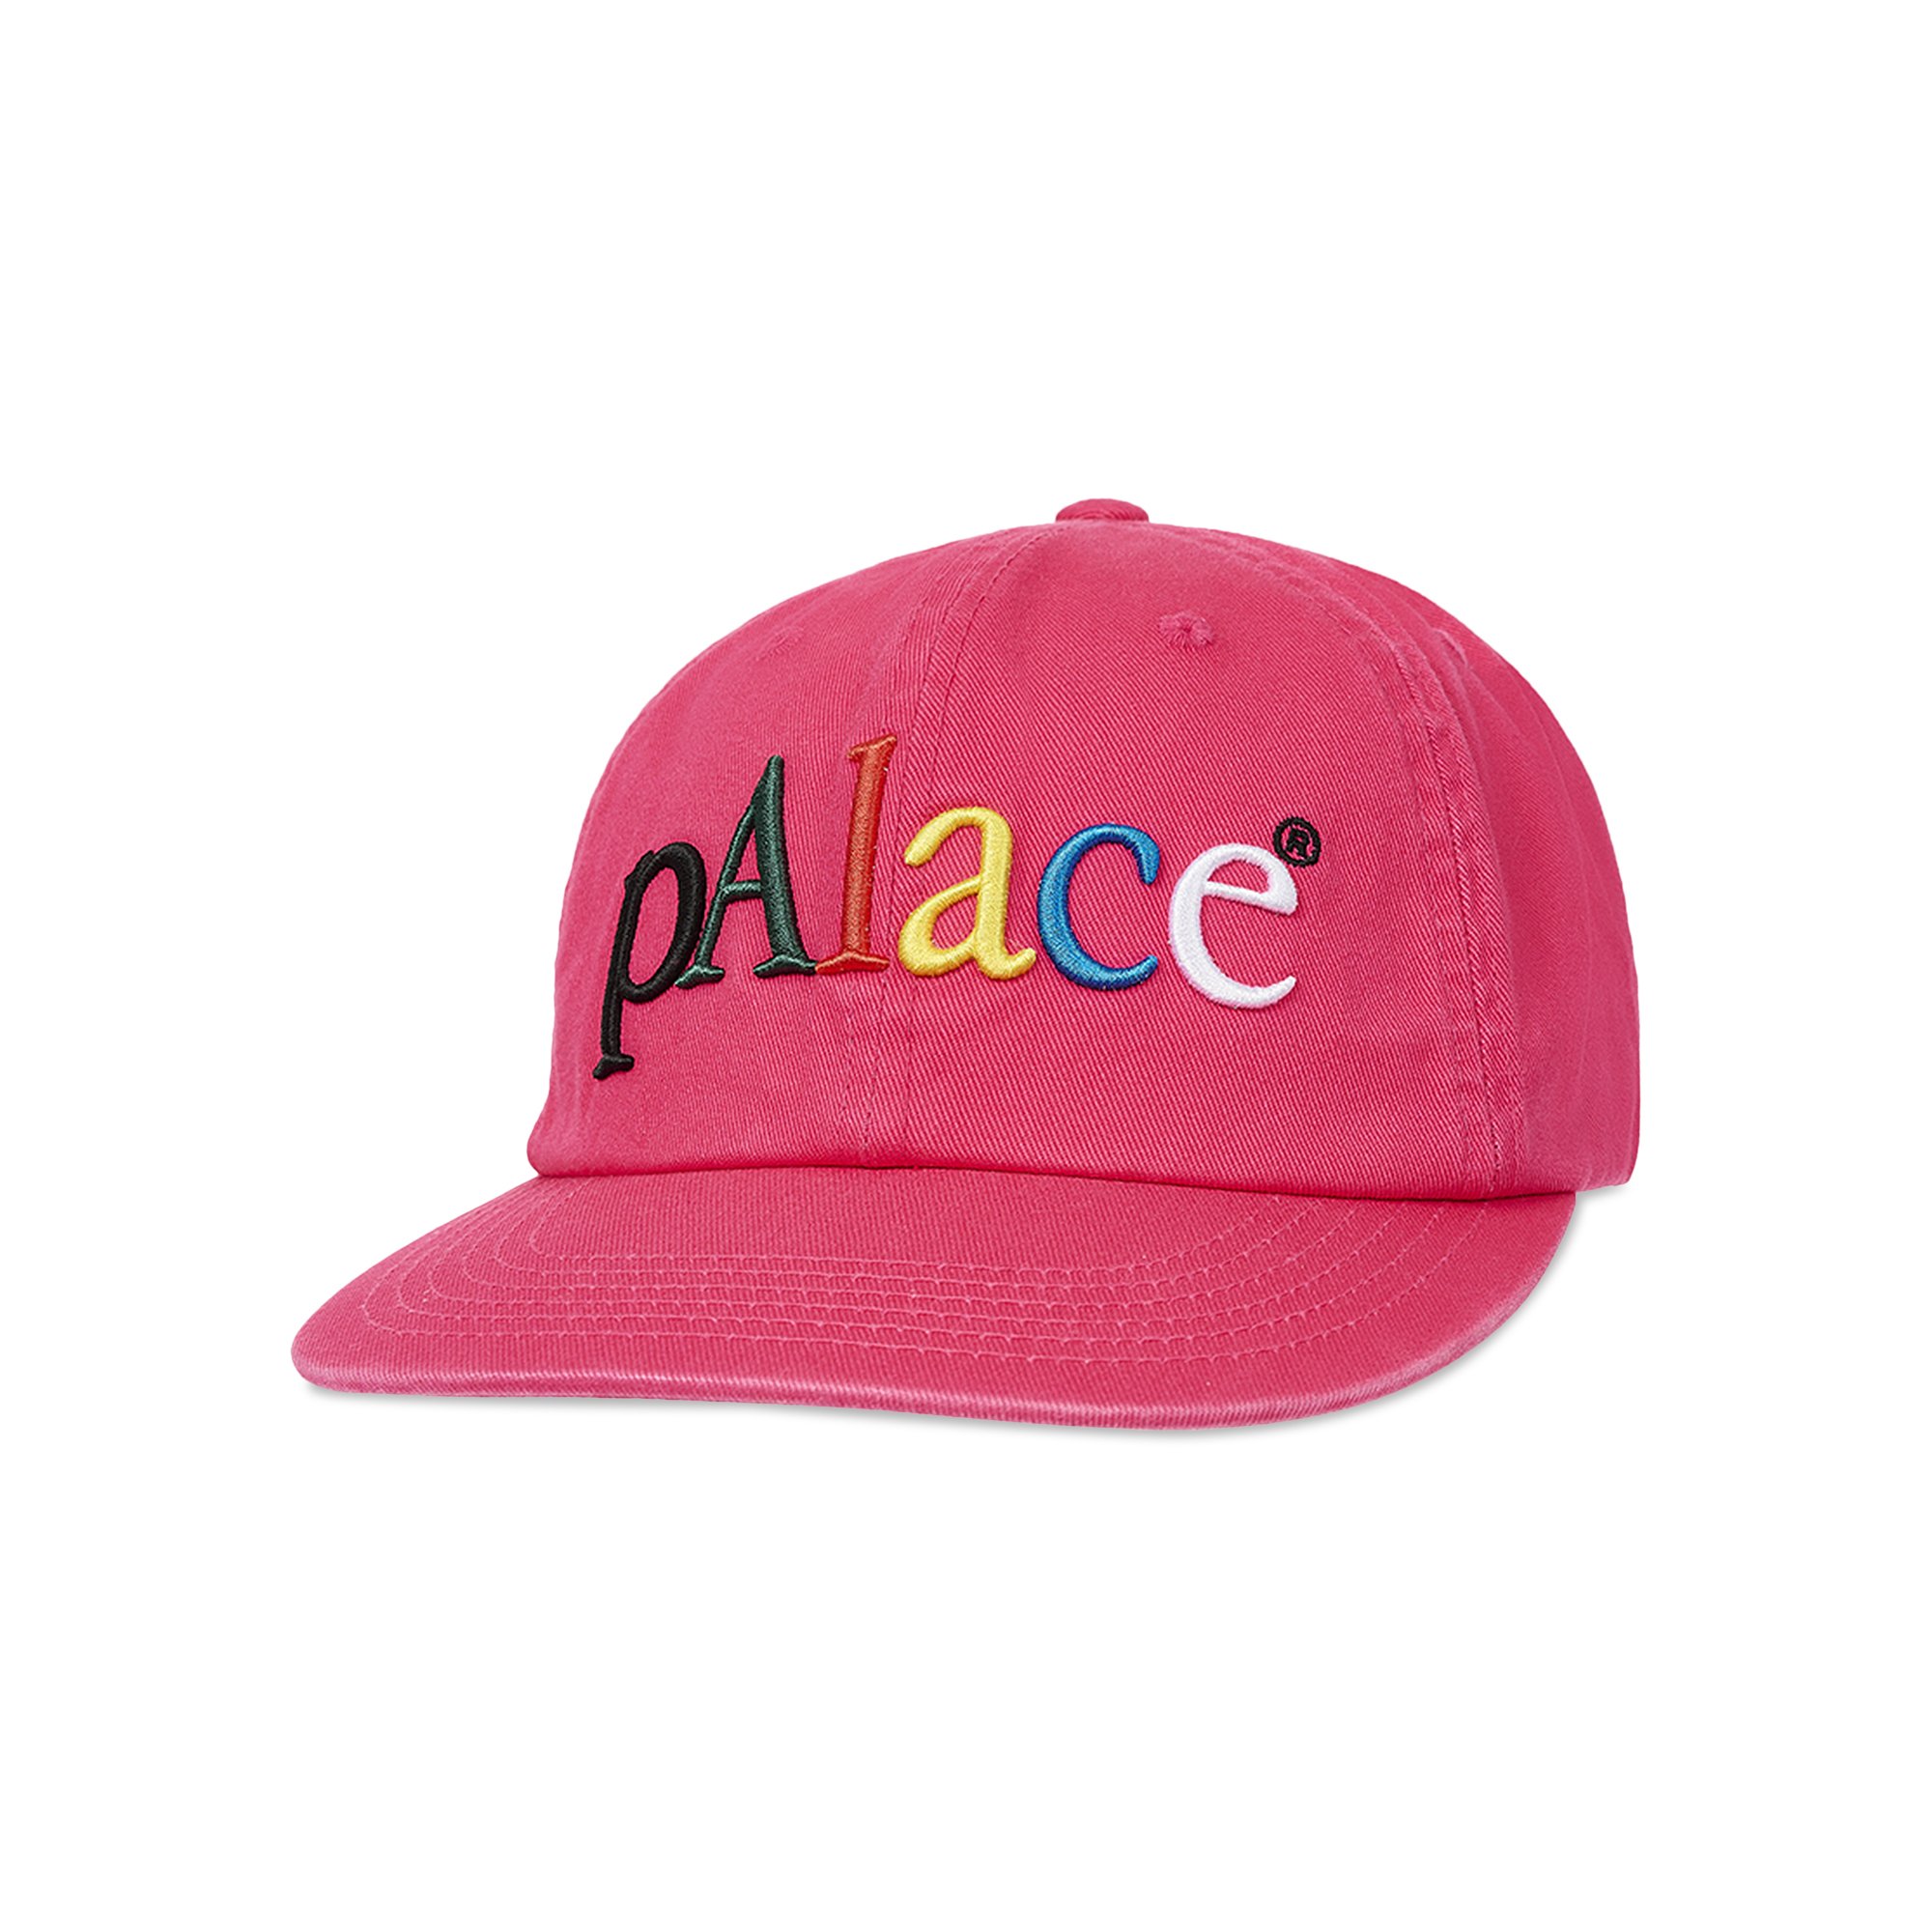 Palace skateboards START UP PAL HAT